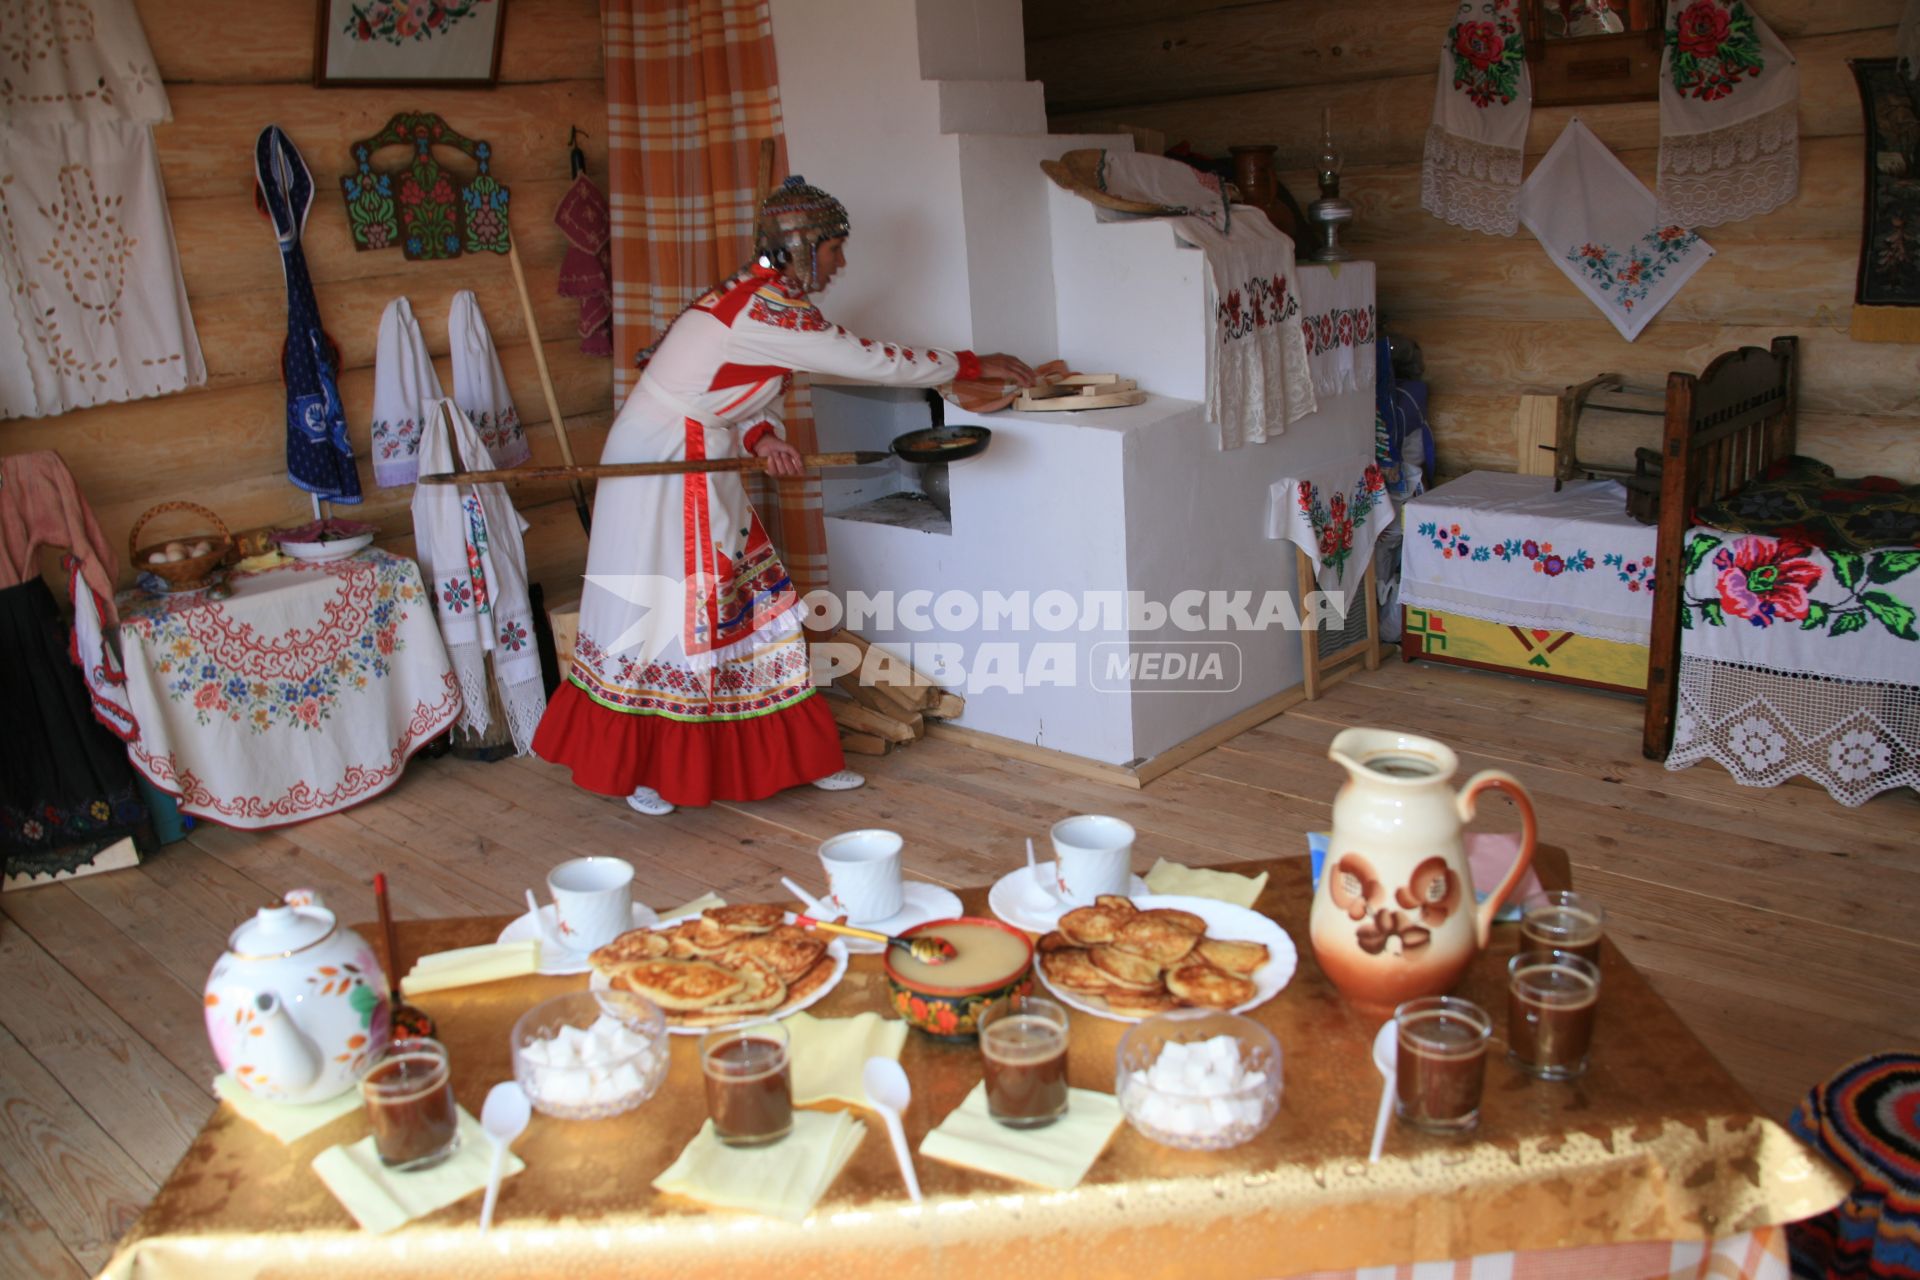 Русские традиции. На снимке: женщина с кочергой у русской печи